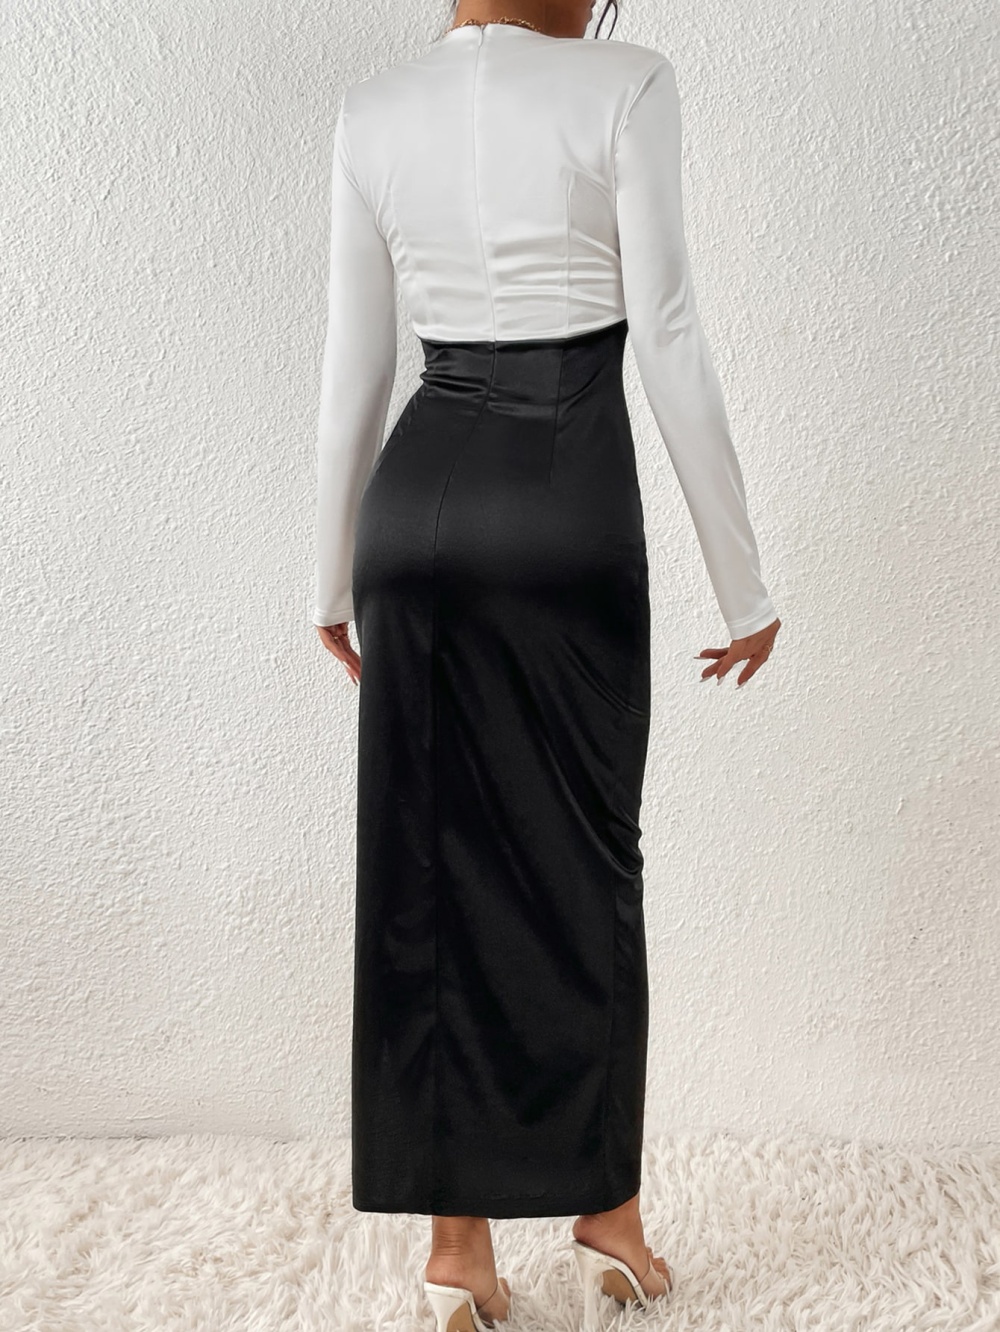 Elegant dress European style skirt for women